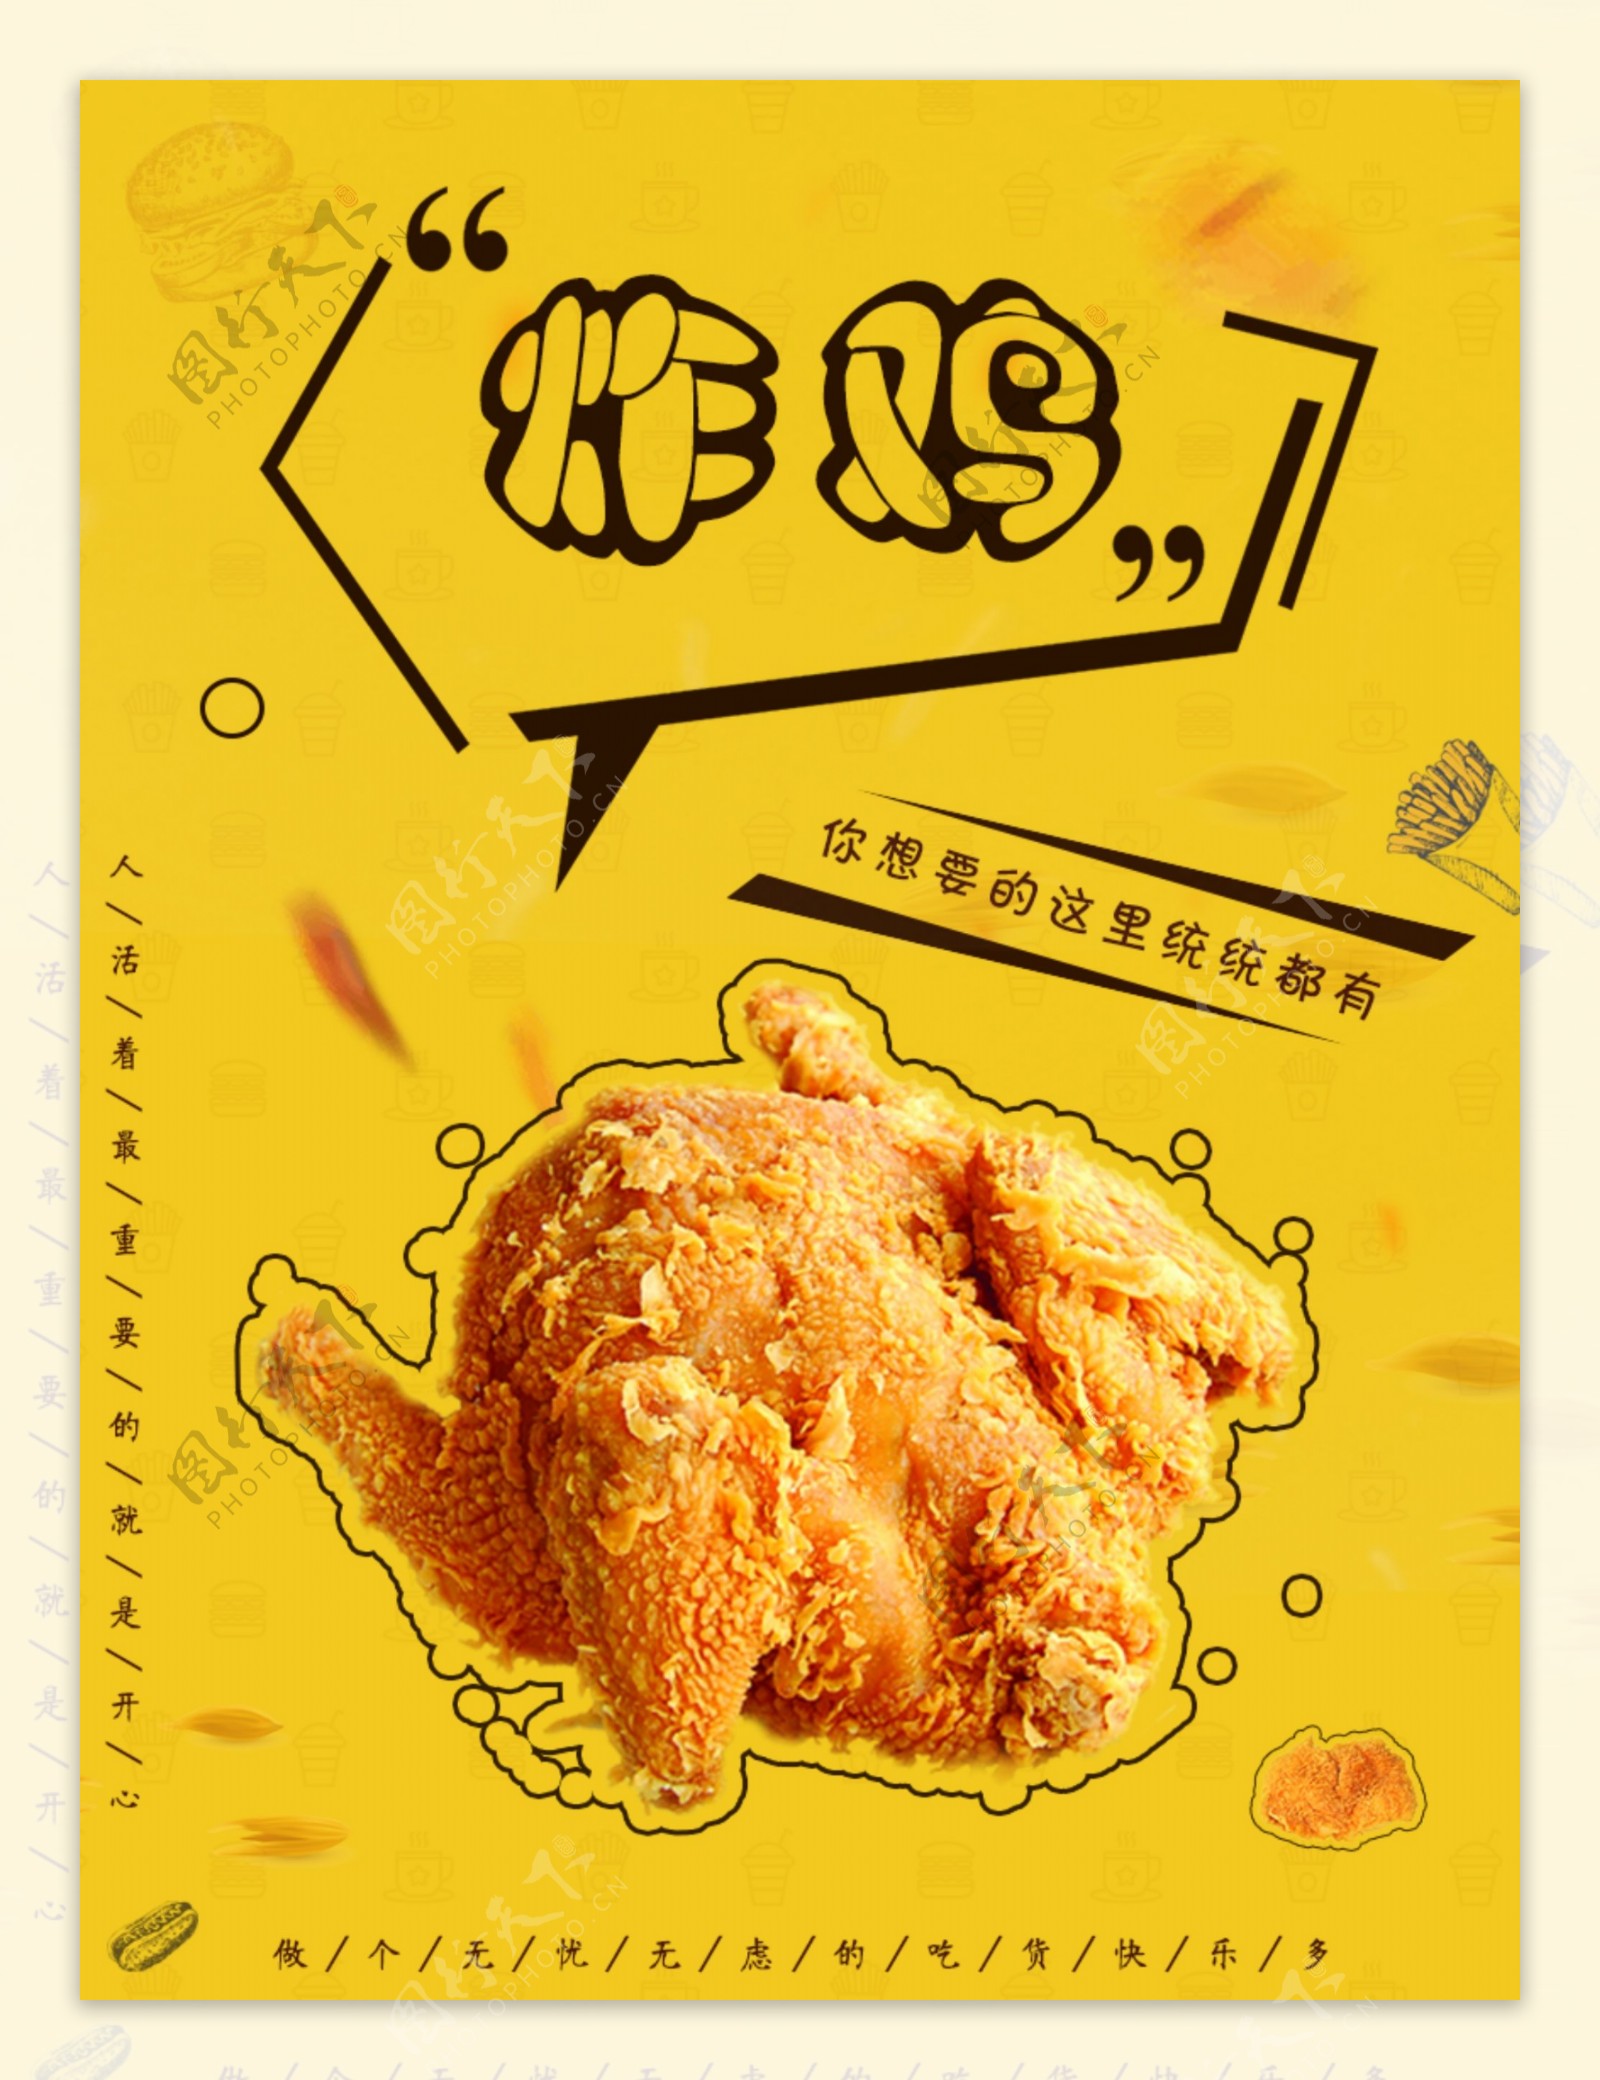 炸鸡鸡排美食海报设计